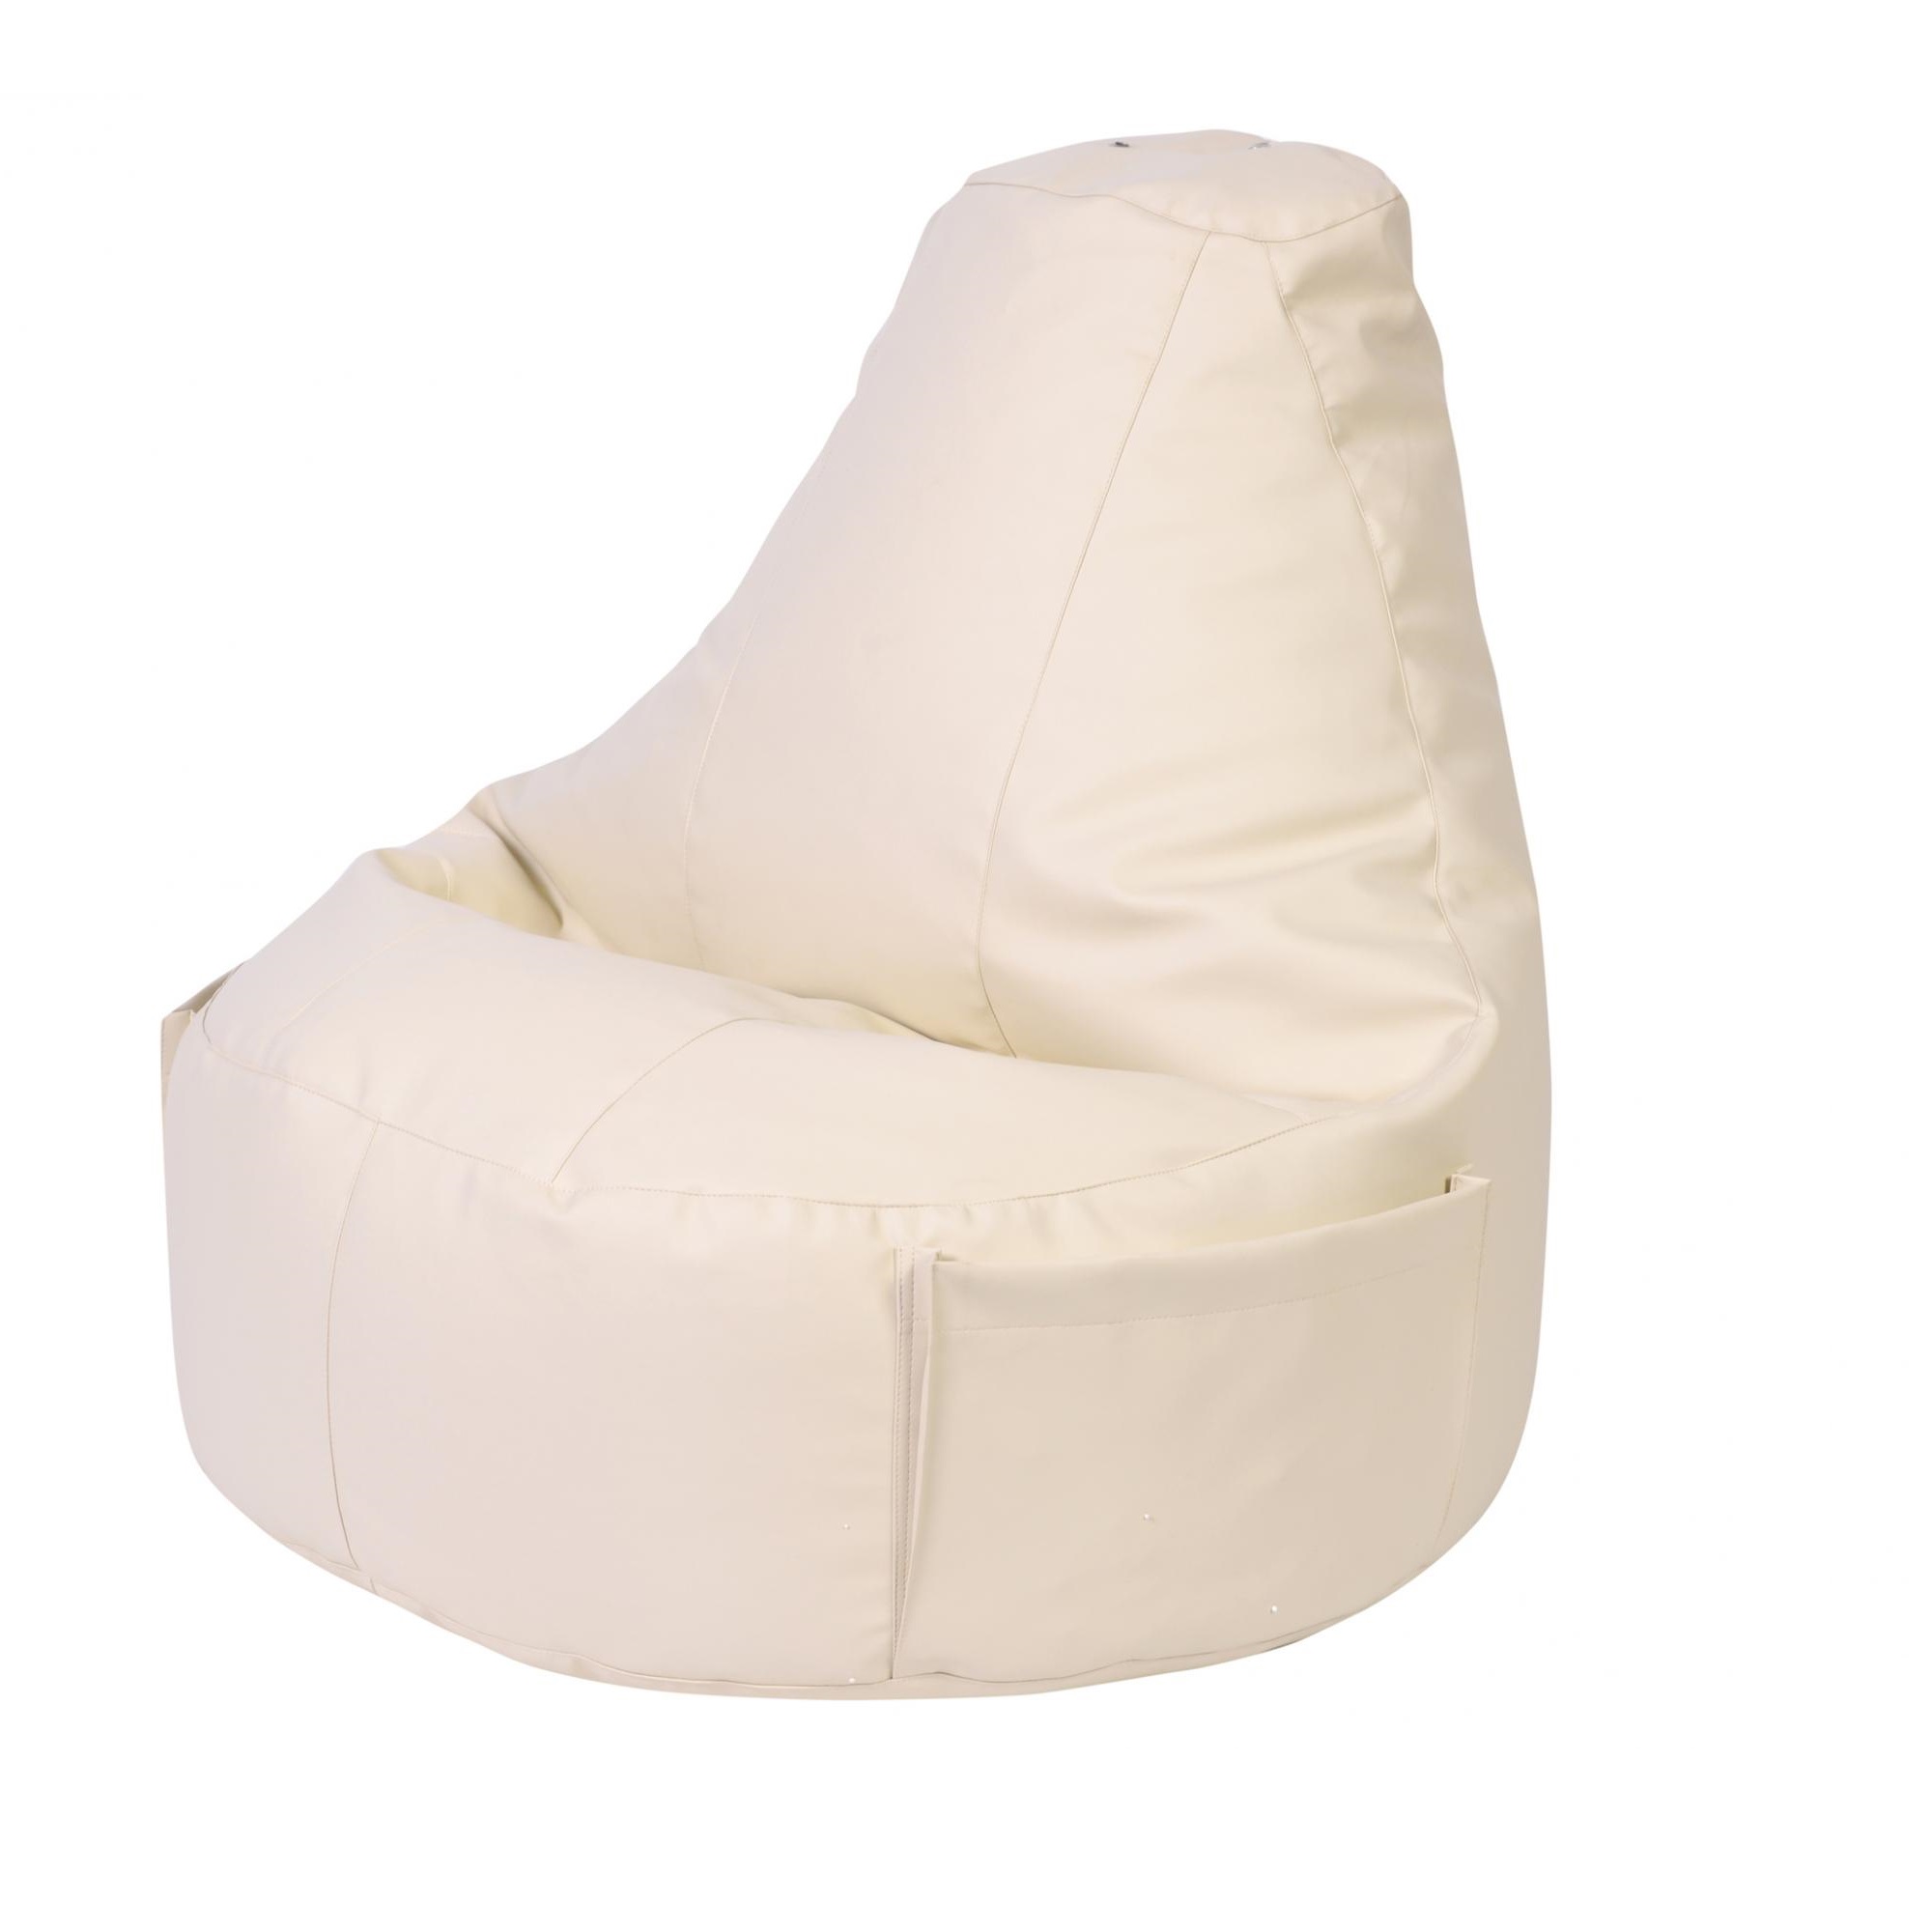 фото Кресло dreambag comfort светло-бежевый экокожа 150x90 см